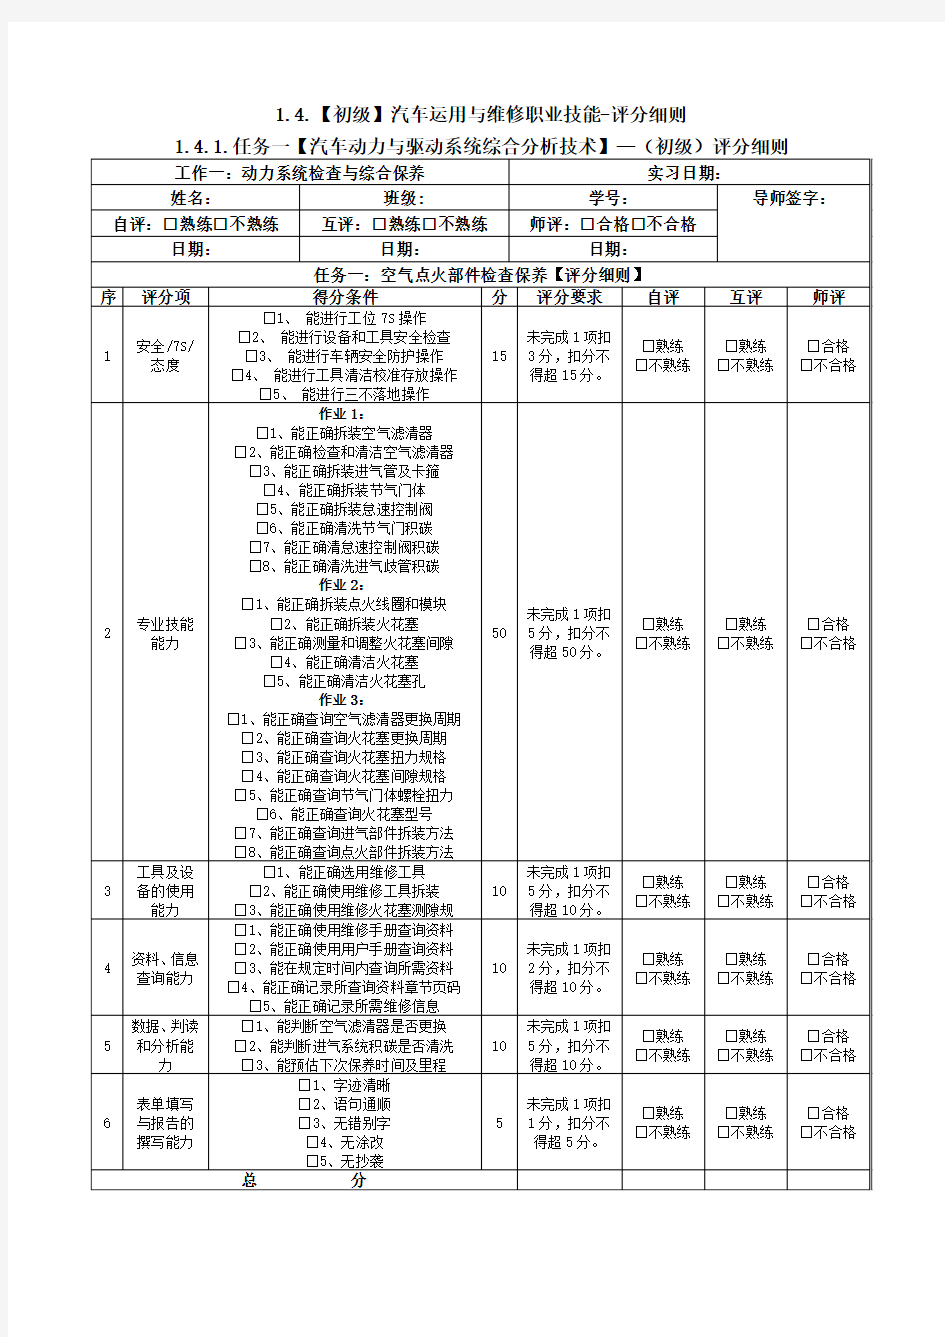 张生强42-0010002武汉市交通学校+评分细则